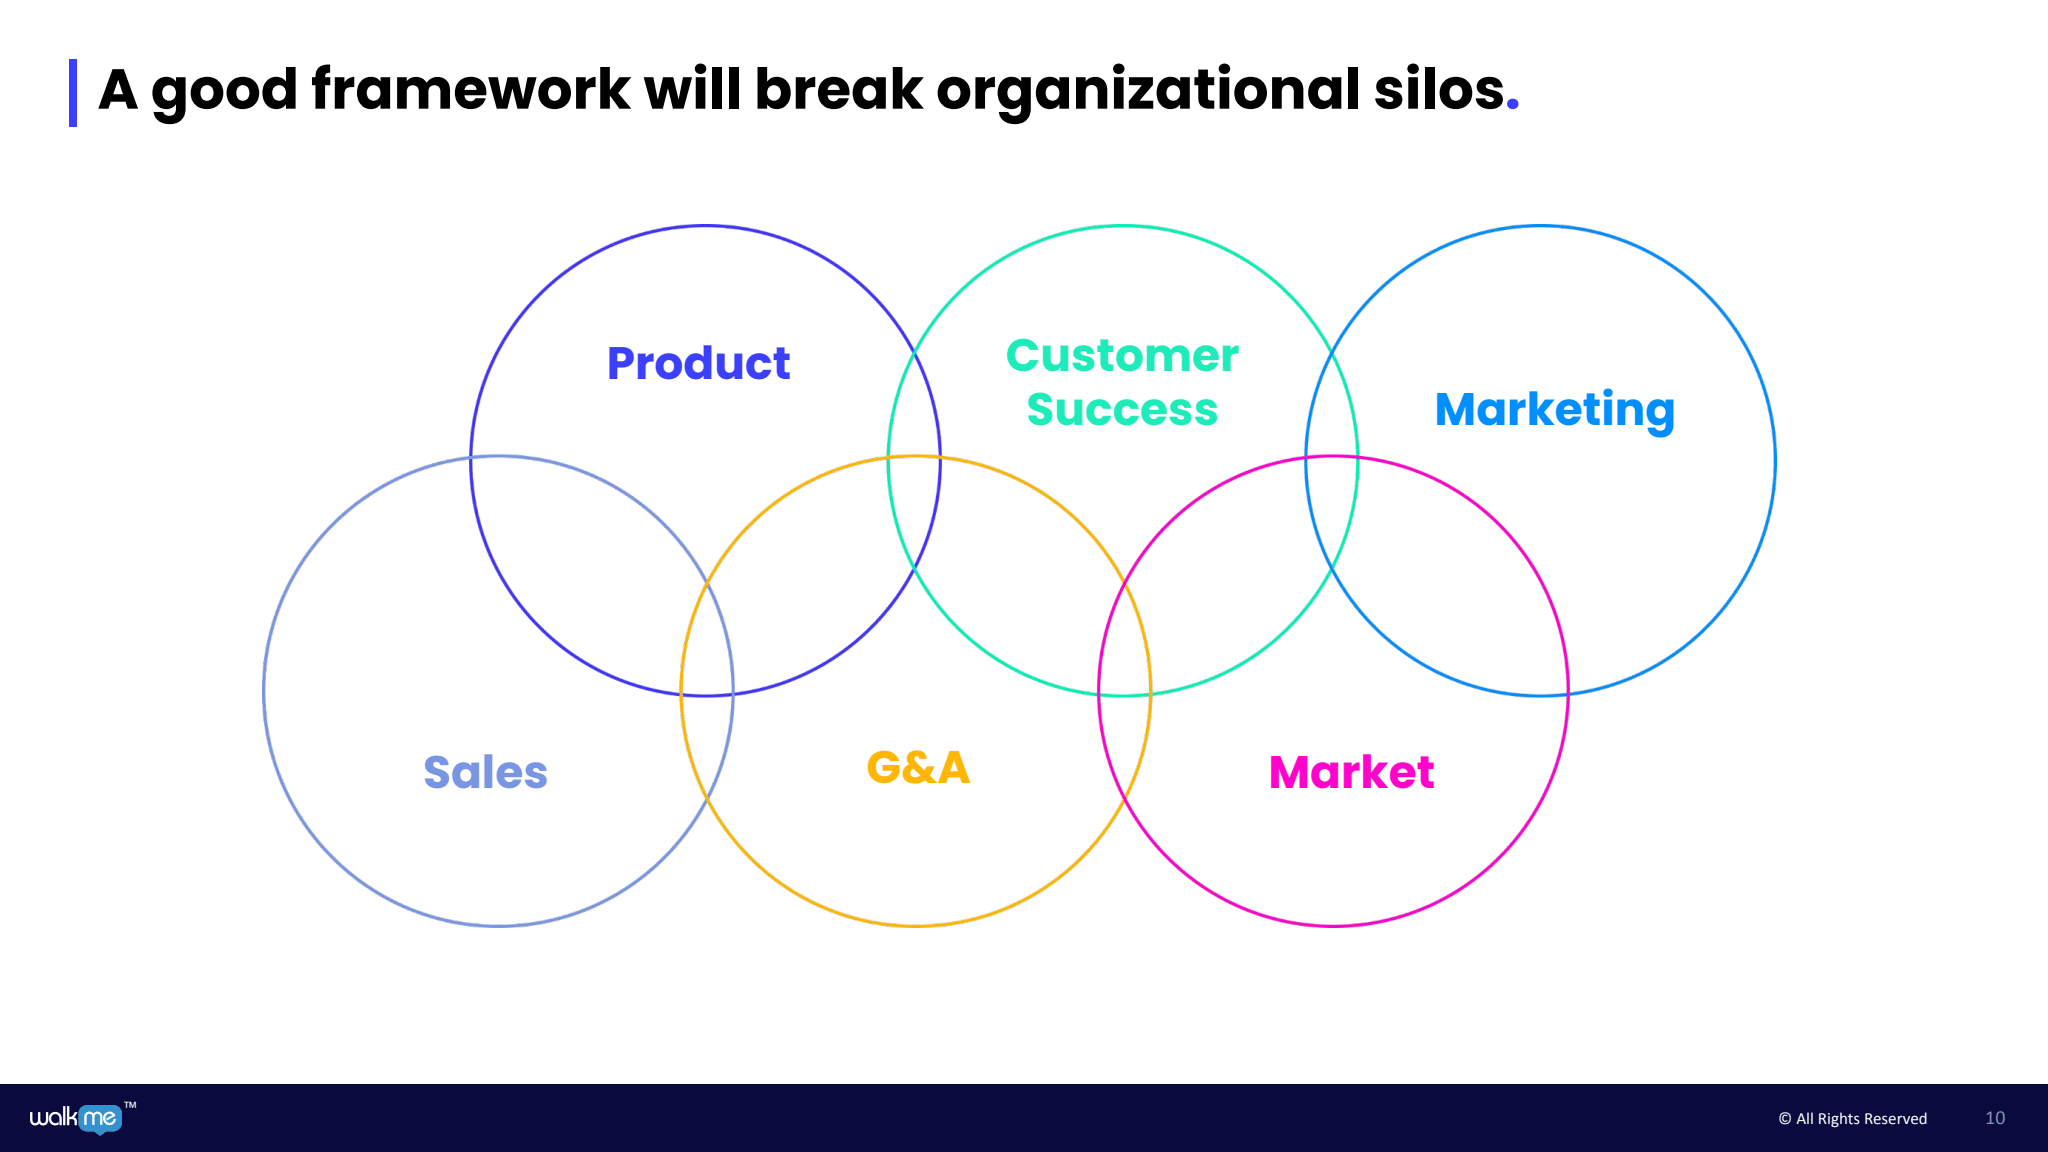 A good framework breaks organizational silos